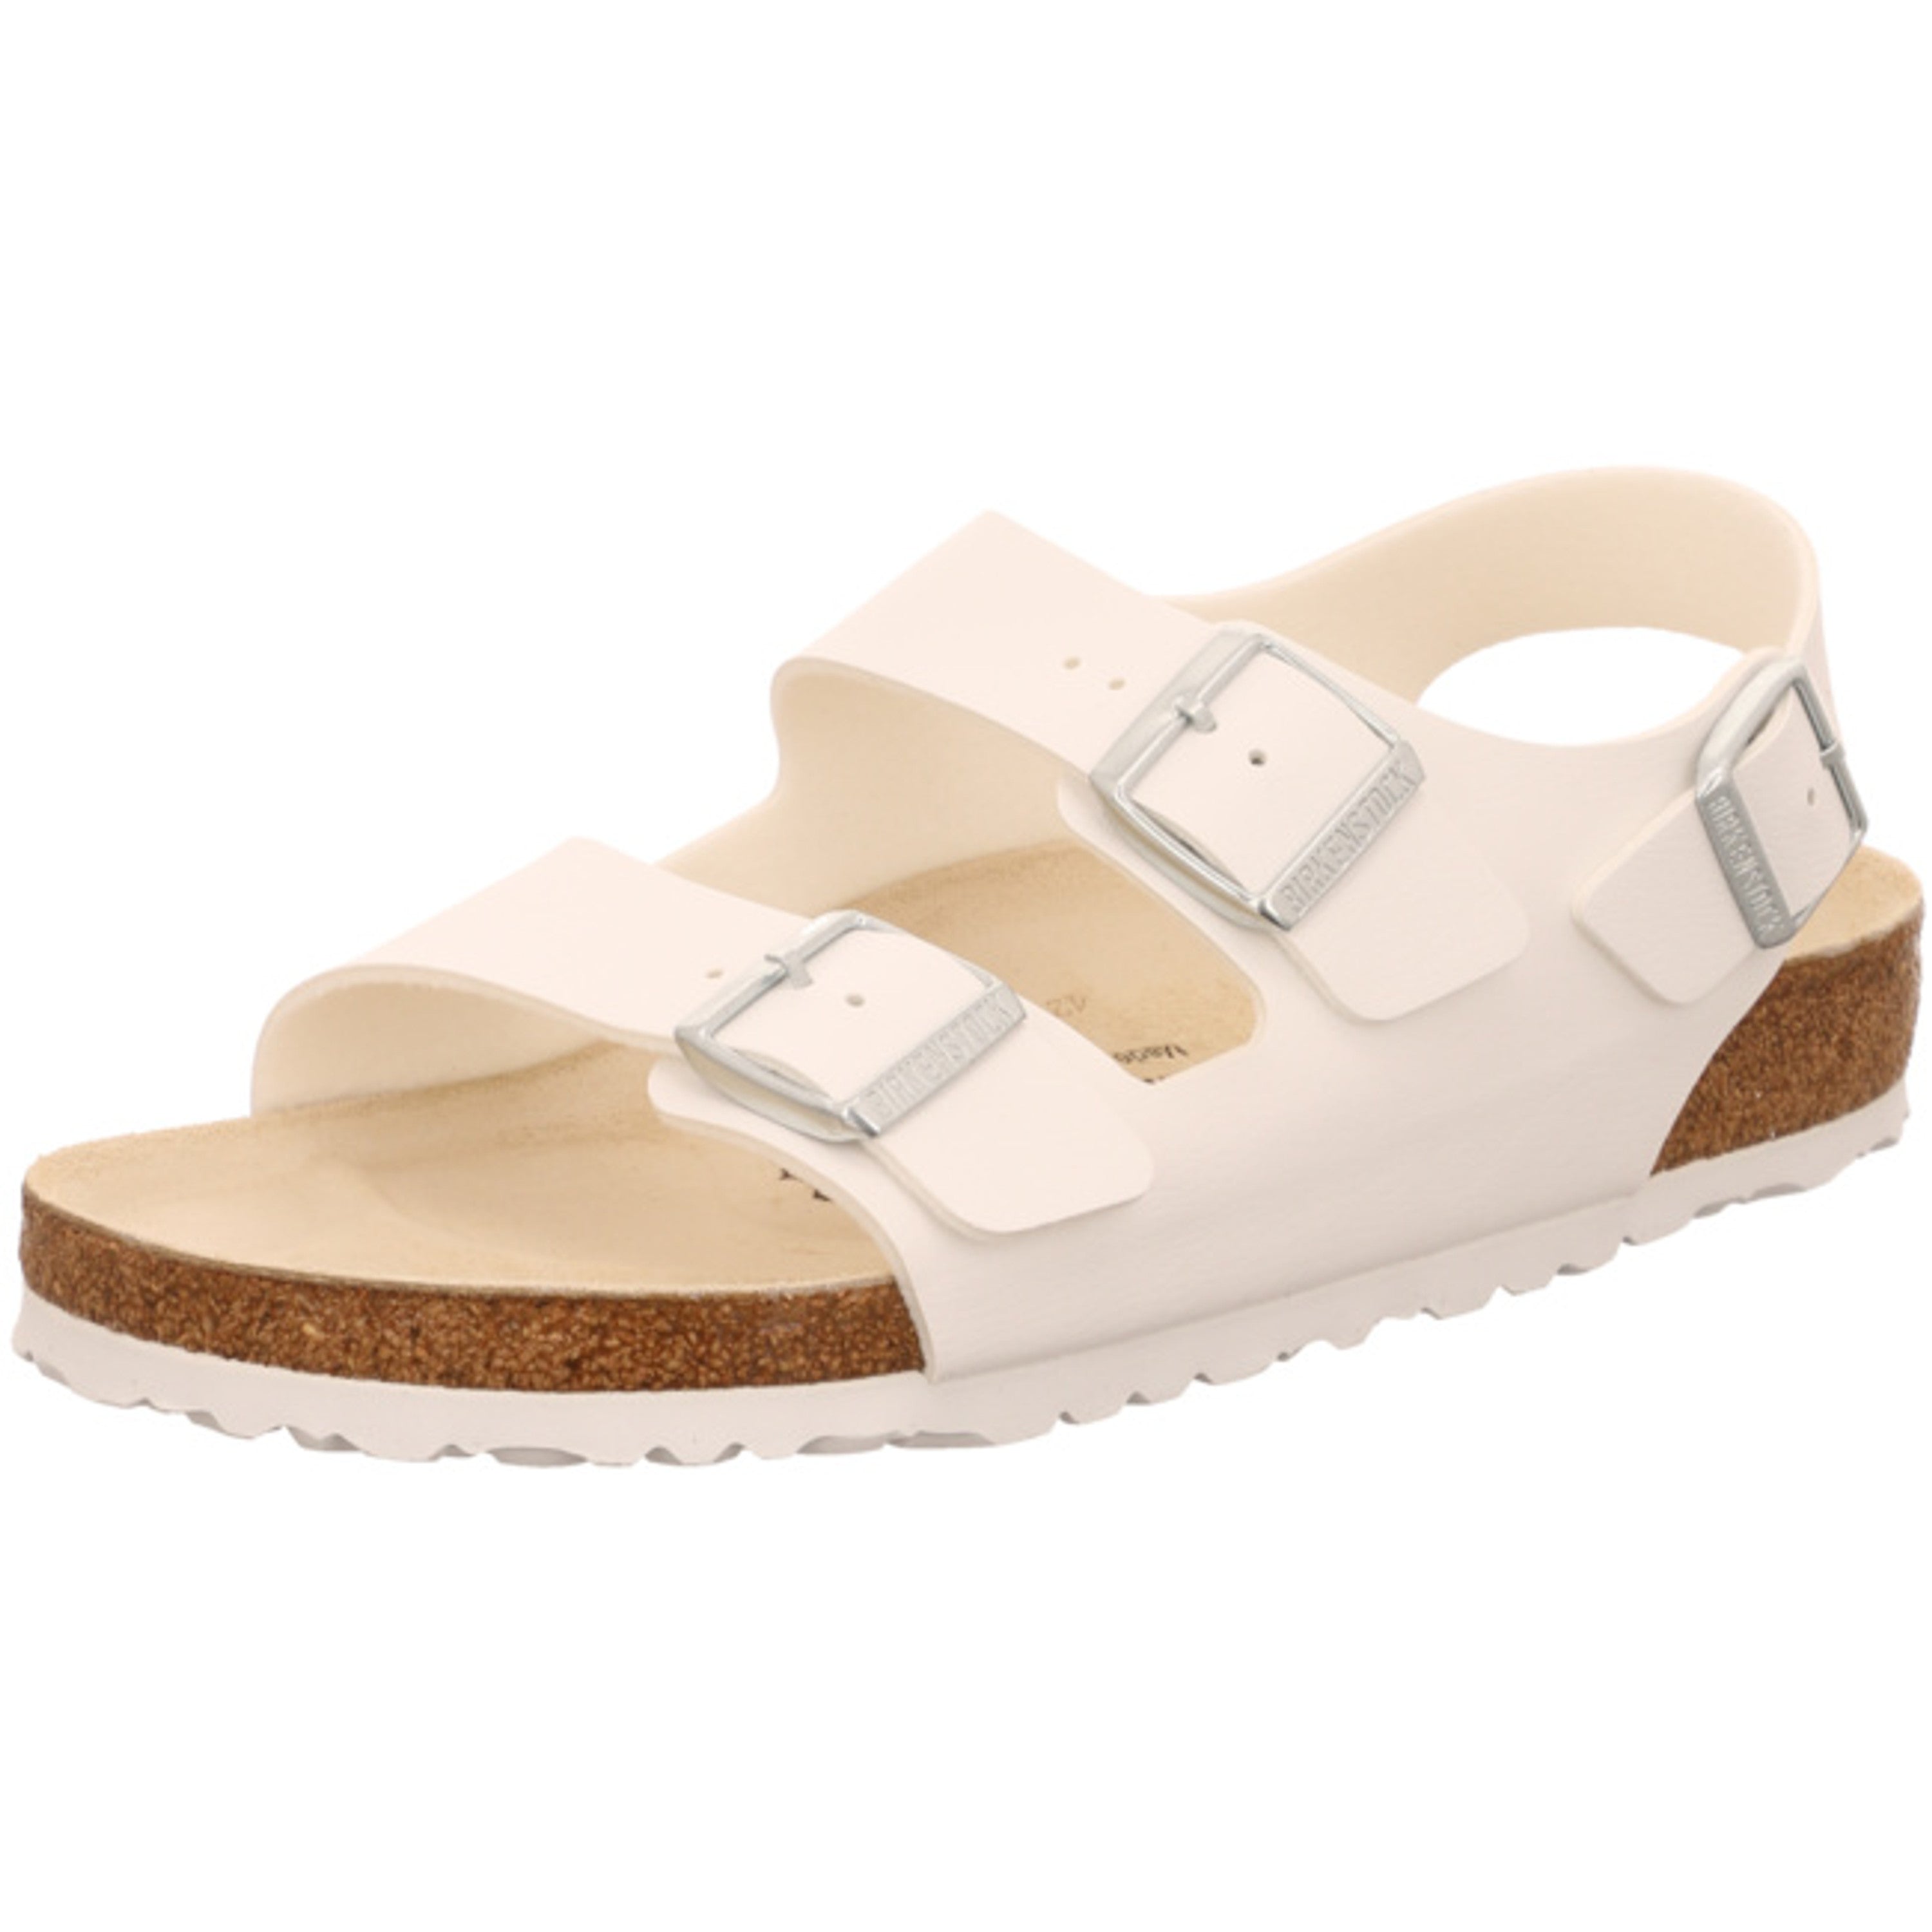 Birkenstock Milano Ankle Strap regular White Birko Flor Buckle Shoes Strappy Slingback Sandals Slippers - Bartel-Shop